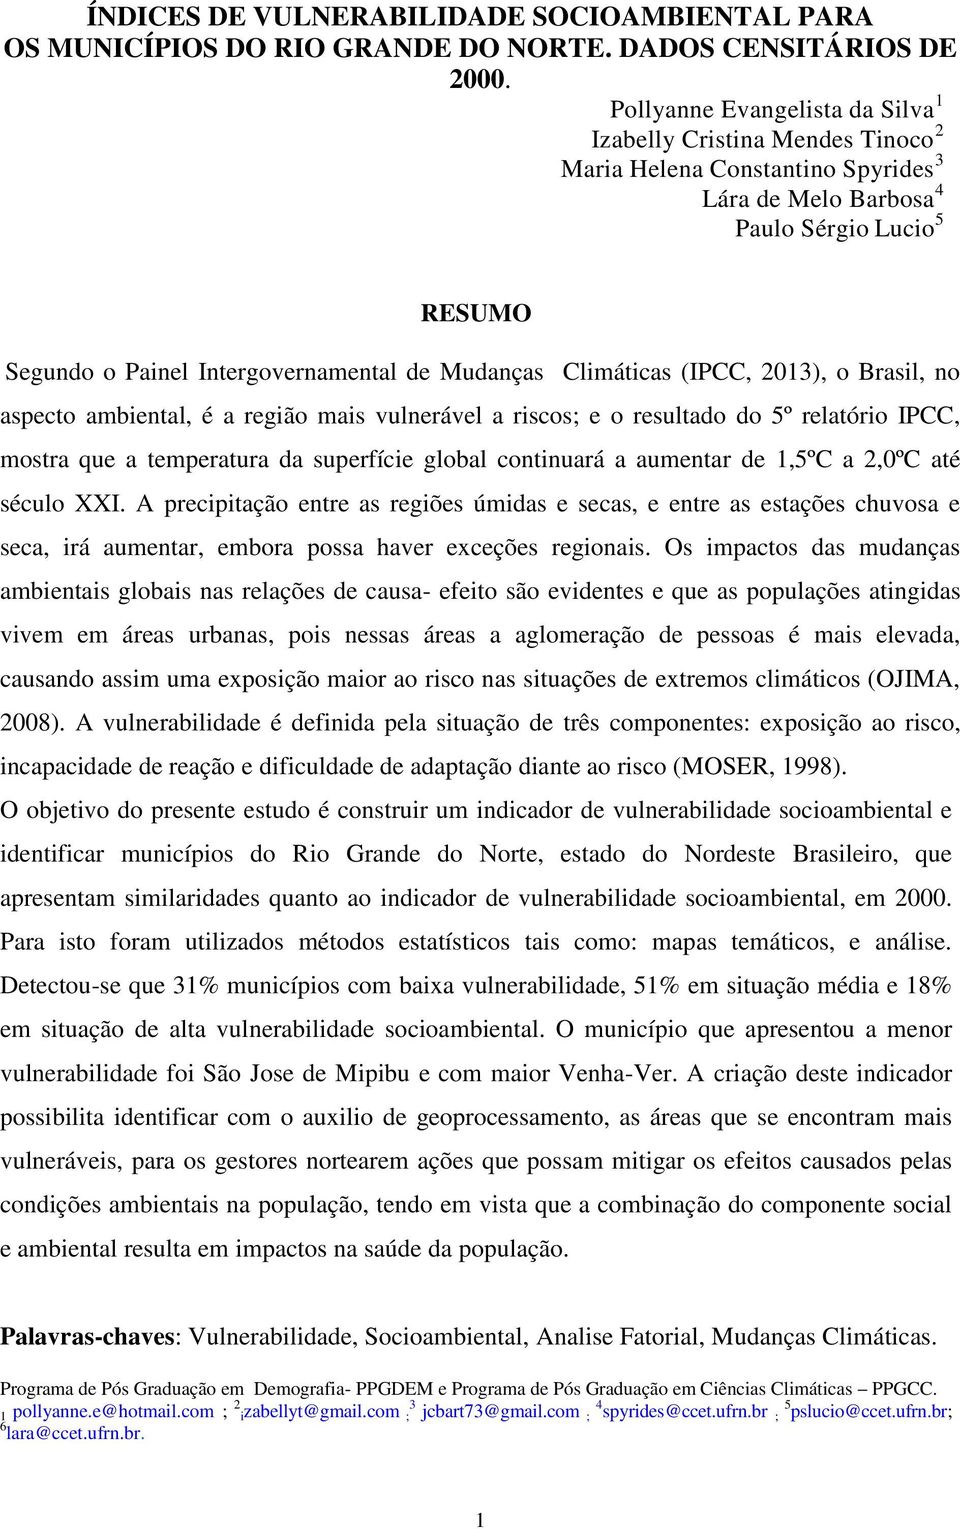 Mudanças Climáticas (IPCC, 2013), o Brasil, no aspecto ambiental, é a região mais vulnerável a riscos; e o resultado do 5º relatório IPCC, mostra que a temperatura da superfície global continuará a